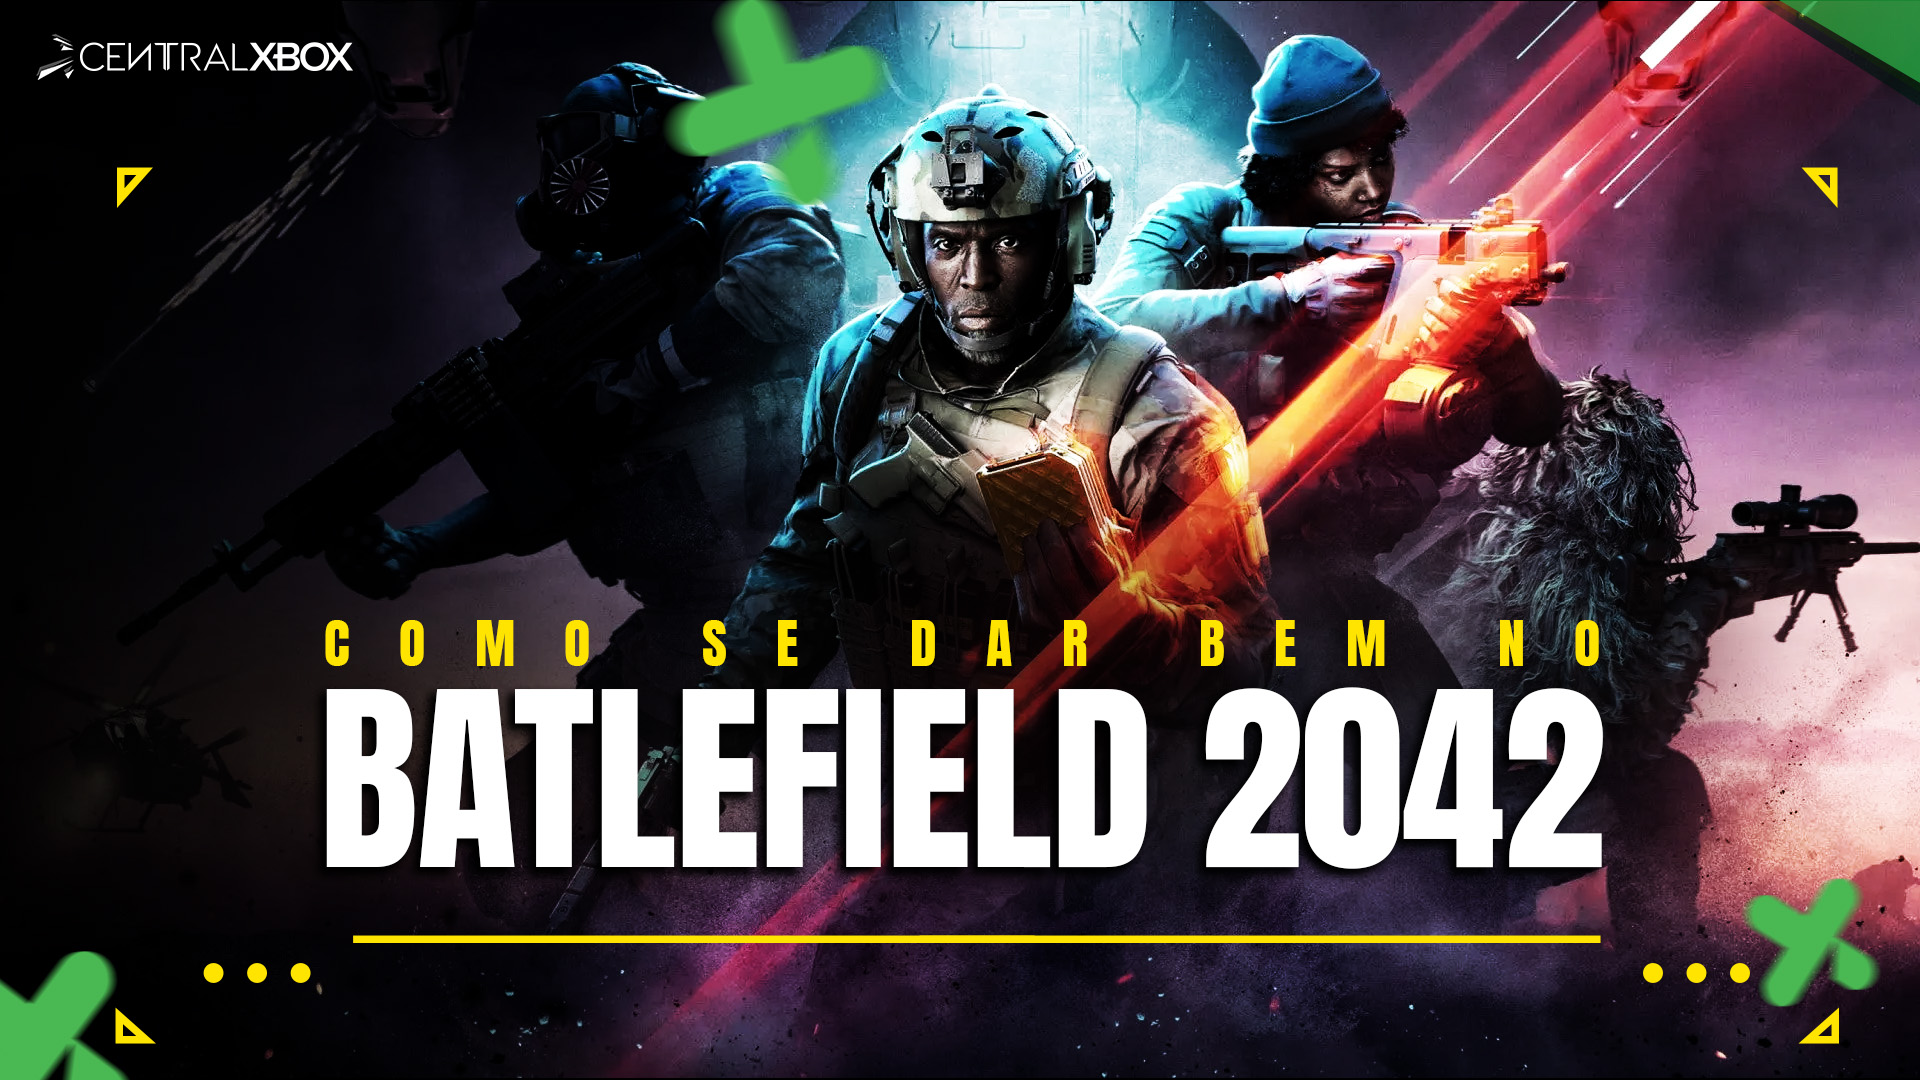 Battlefield 2042: beta aberto começa em outubro; veja como participar -  Canaltech